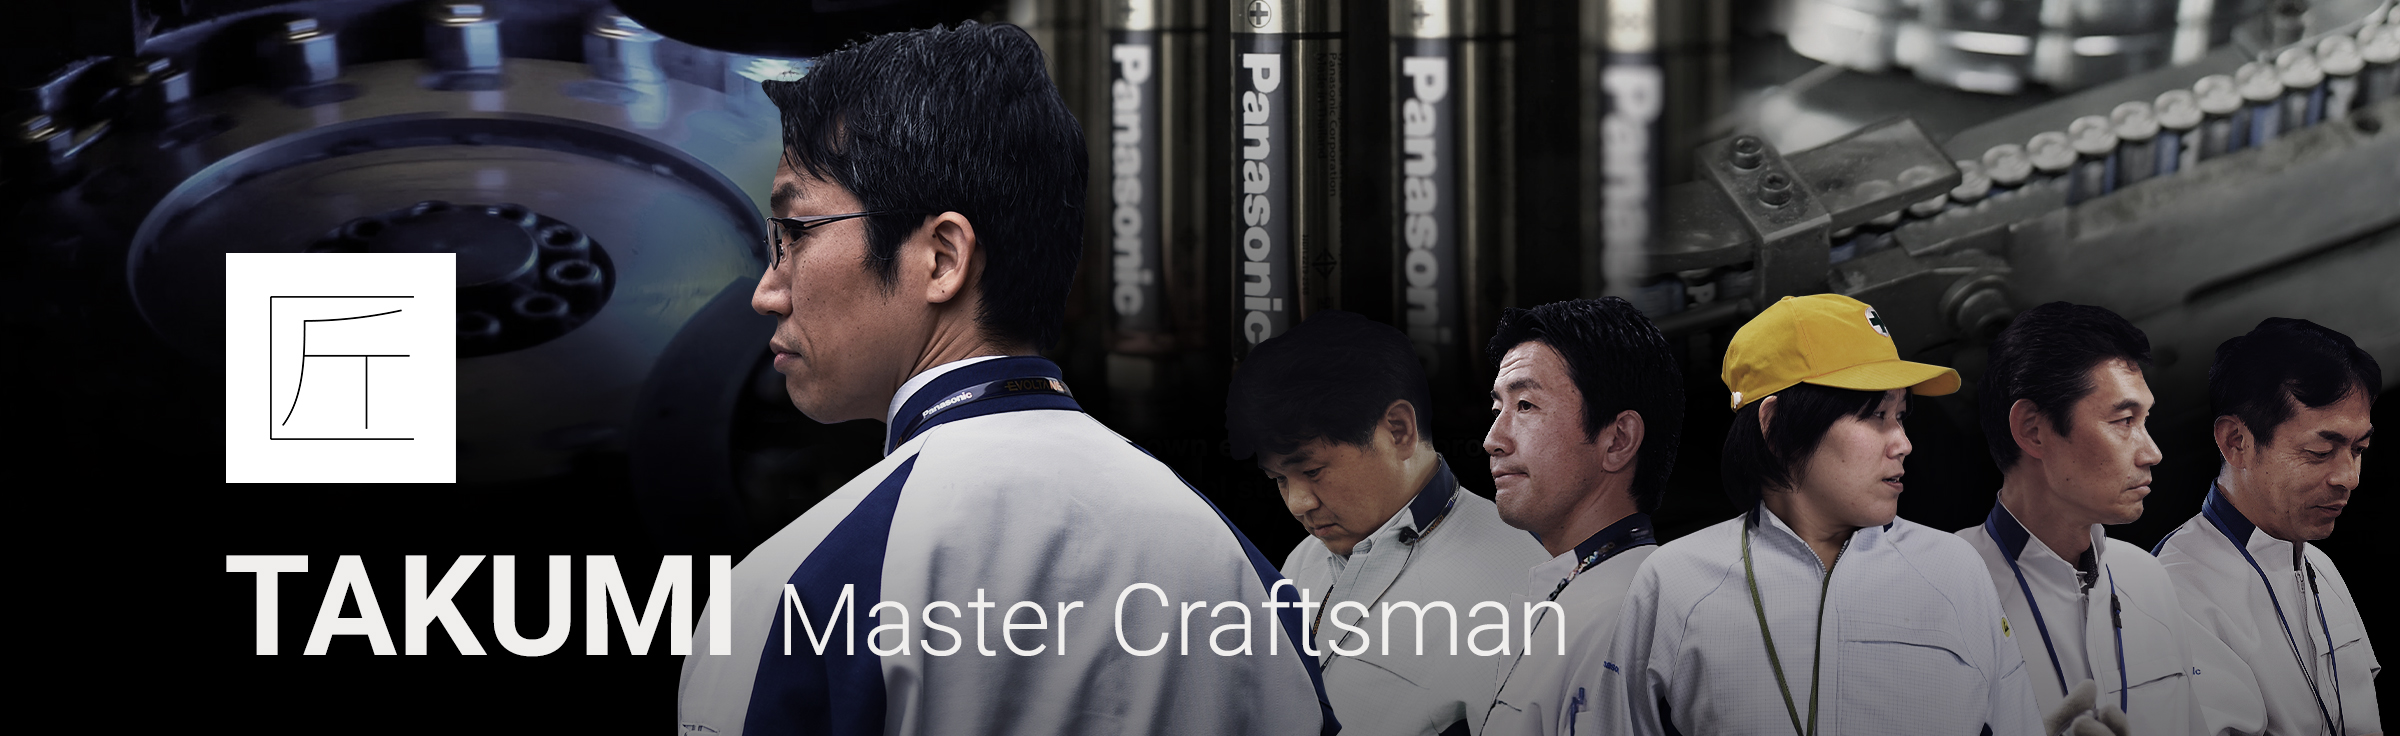 TAKUMI Master Craftsman